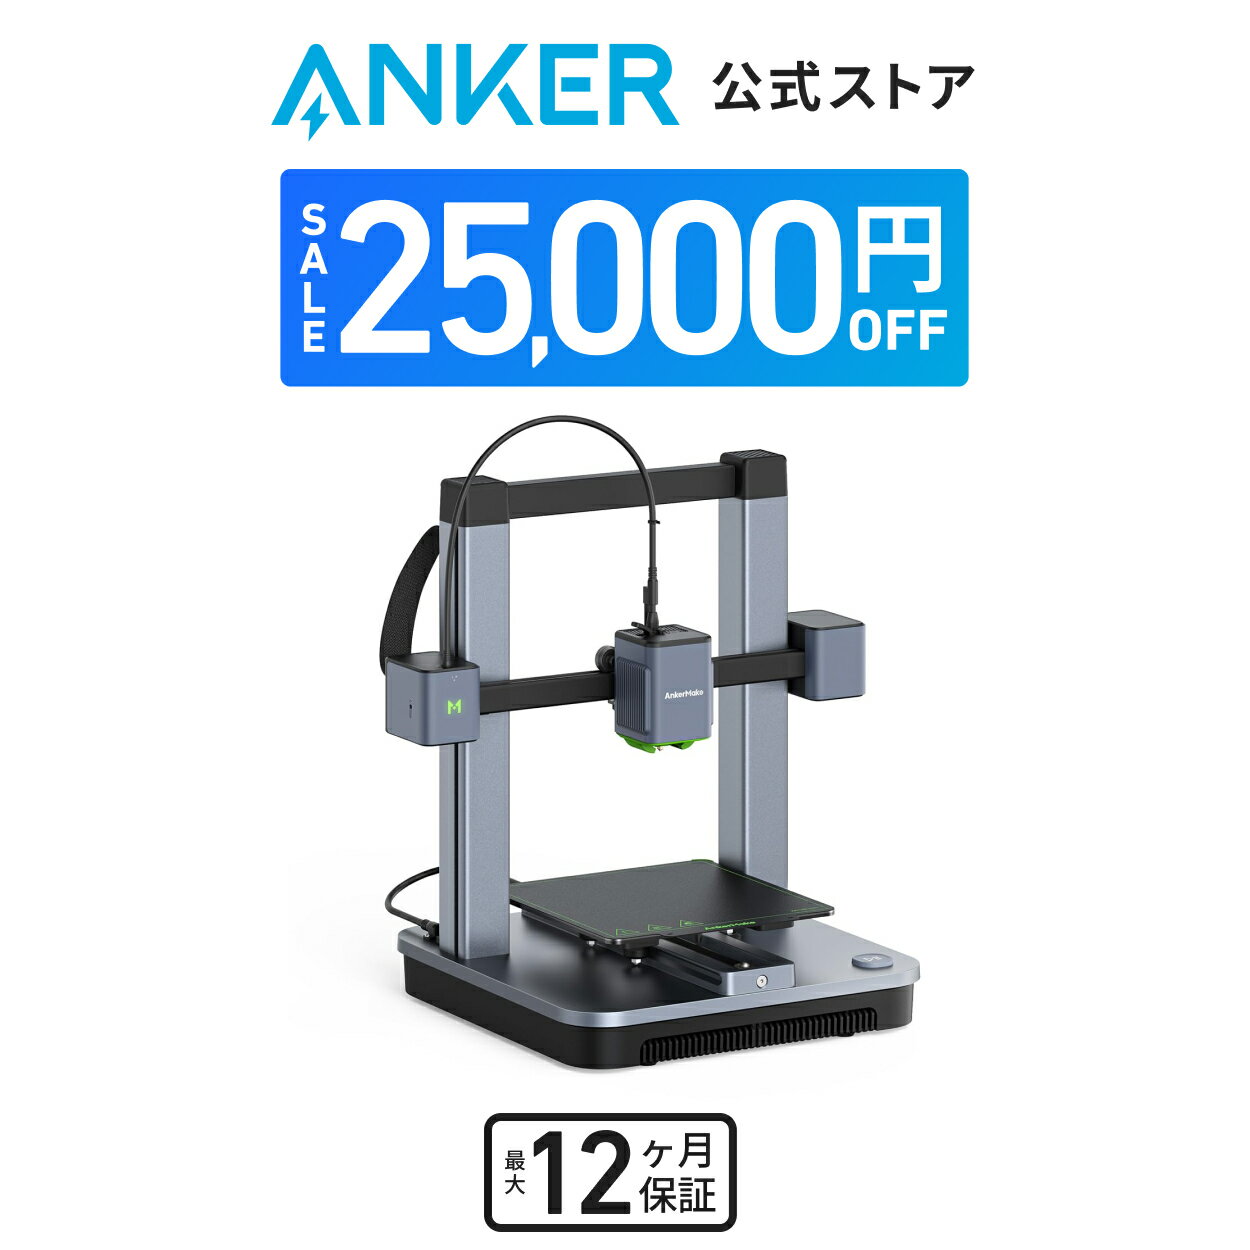 【25,000円OFF 6/11まで】AnkerMake M5C 3Dプリンター 高速プリント 最大移動速度500mm/s 高精度 オー..